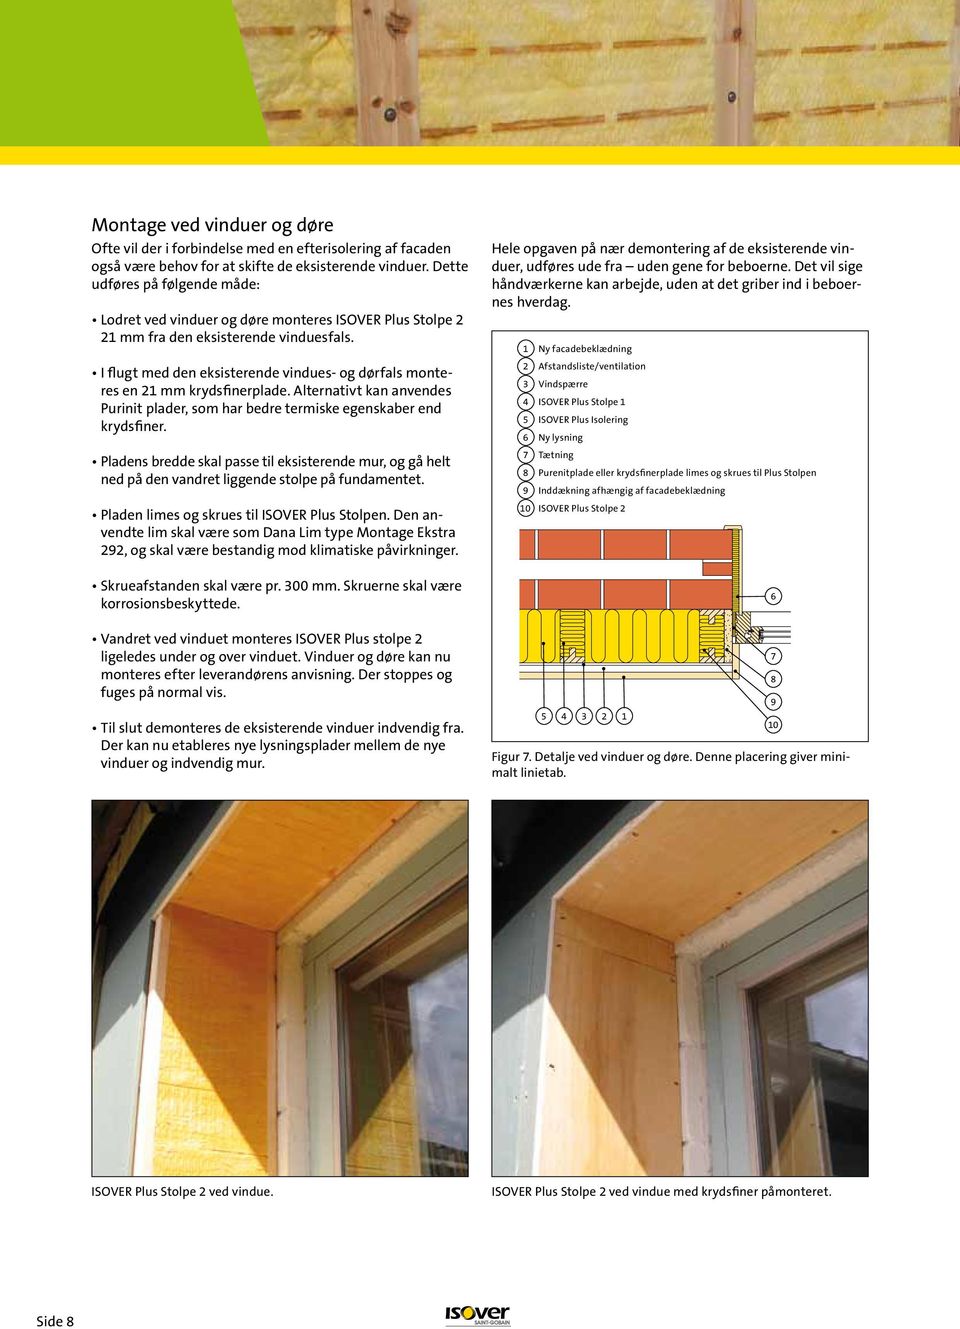 Det vil sige udføres på følgende måde: håndværkerne kan arbejde, uden at det griber ind i beboernes Lodret ved vinduer og døre monteres ISOVER Plus Stolpe facadebeklædning hverdag.